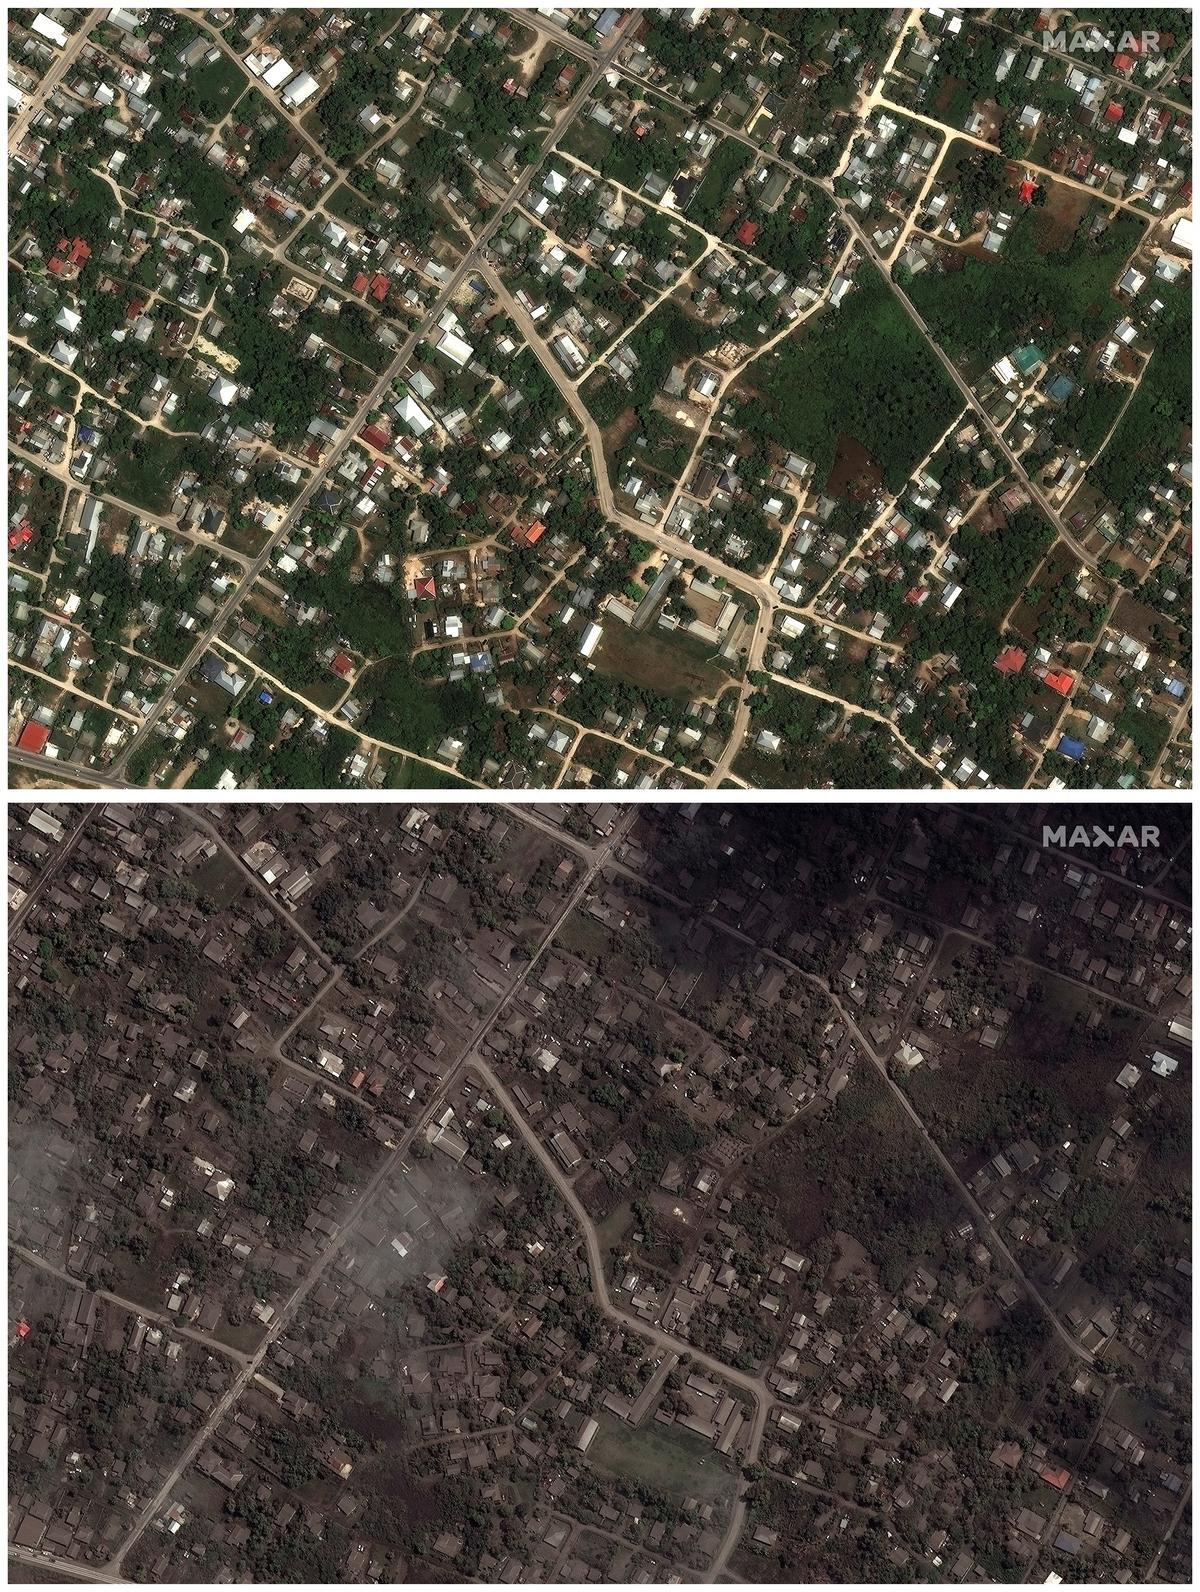 Casas y calles en Nuku’alofa, en Tonga, antes y después de la erupción del volcán.